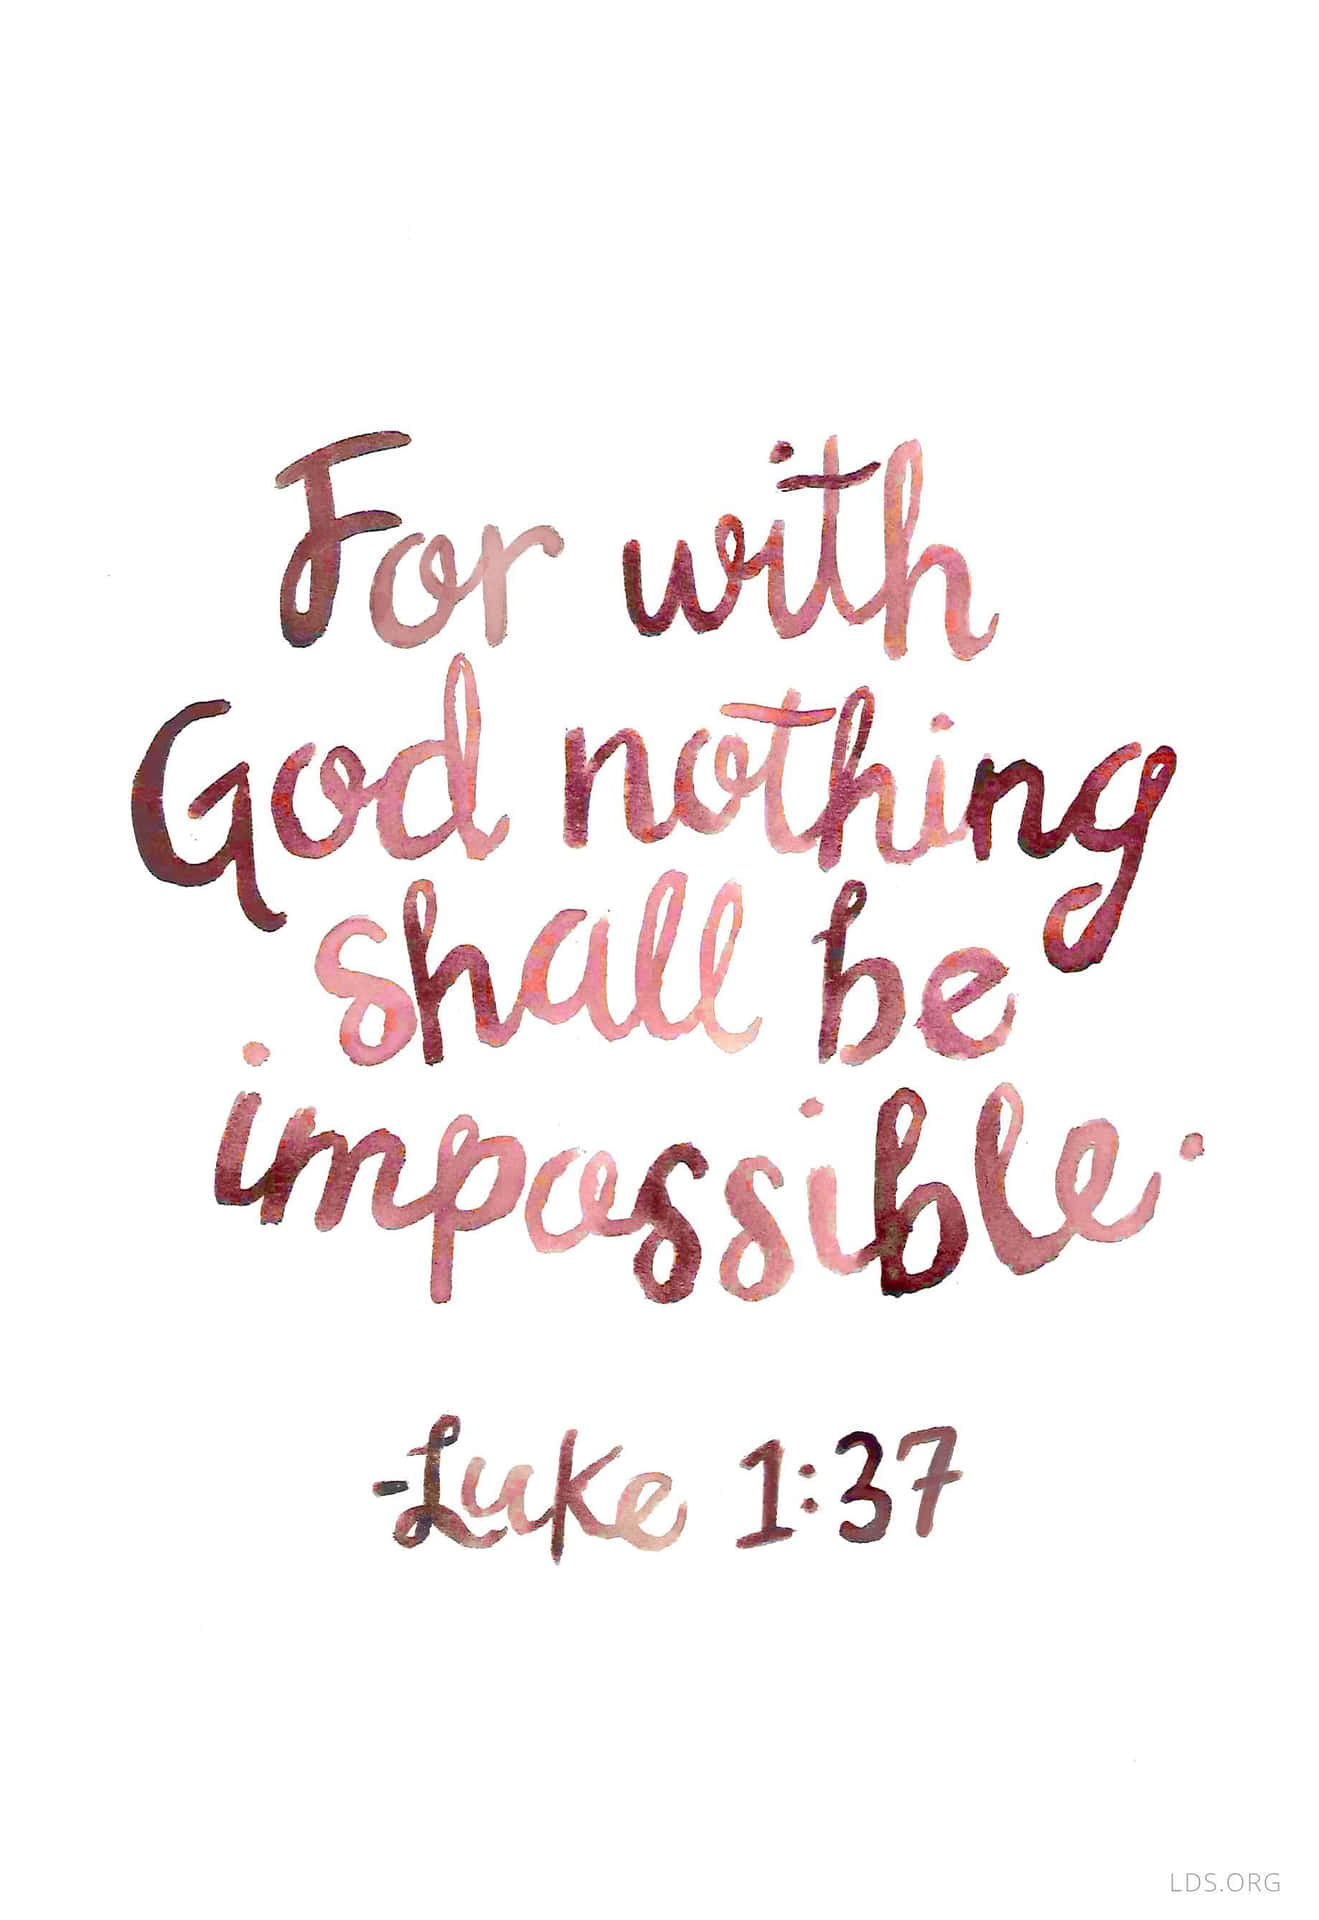 Dennbei Gott Ist Nichts Unmöglich - Lukas 13 Wallpaper